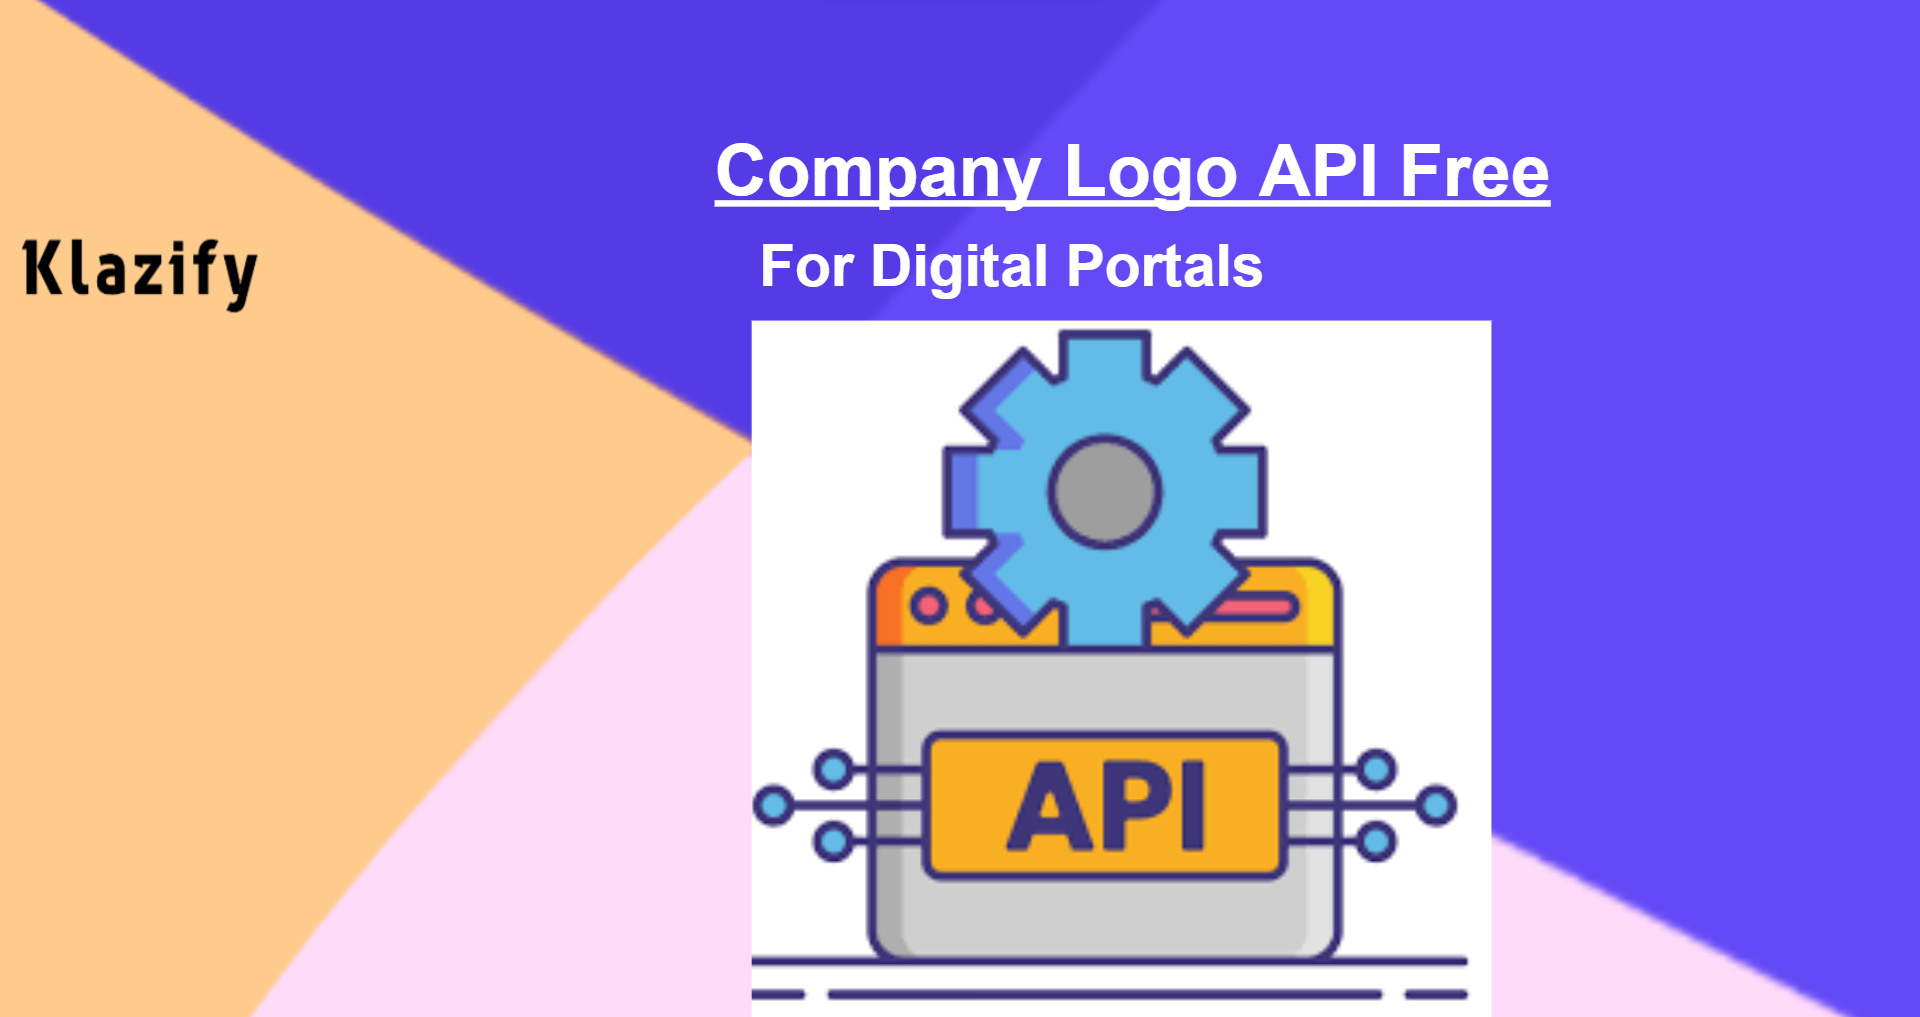 Free Company Logo API For Digital Portals